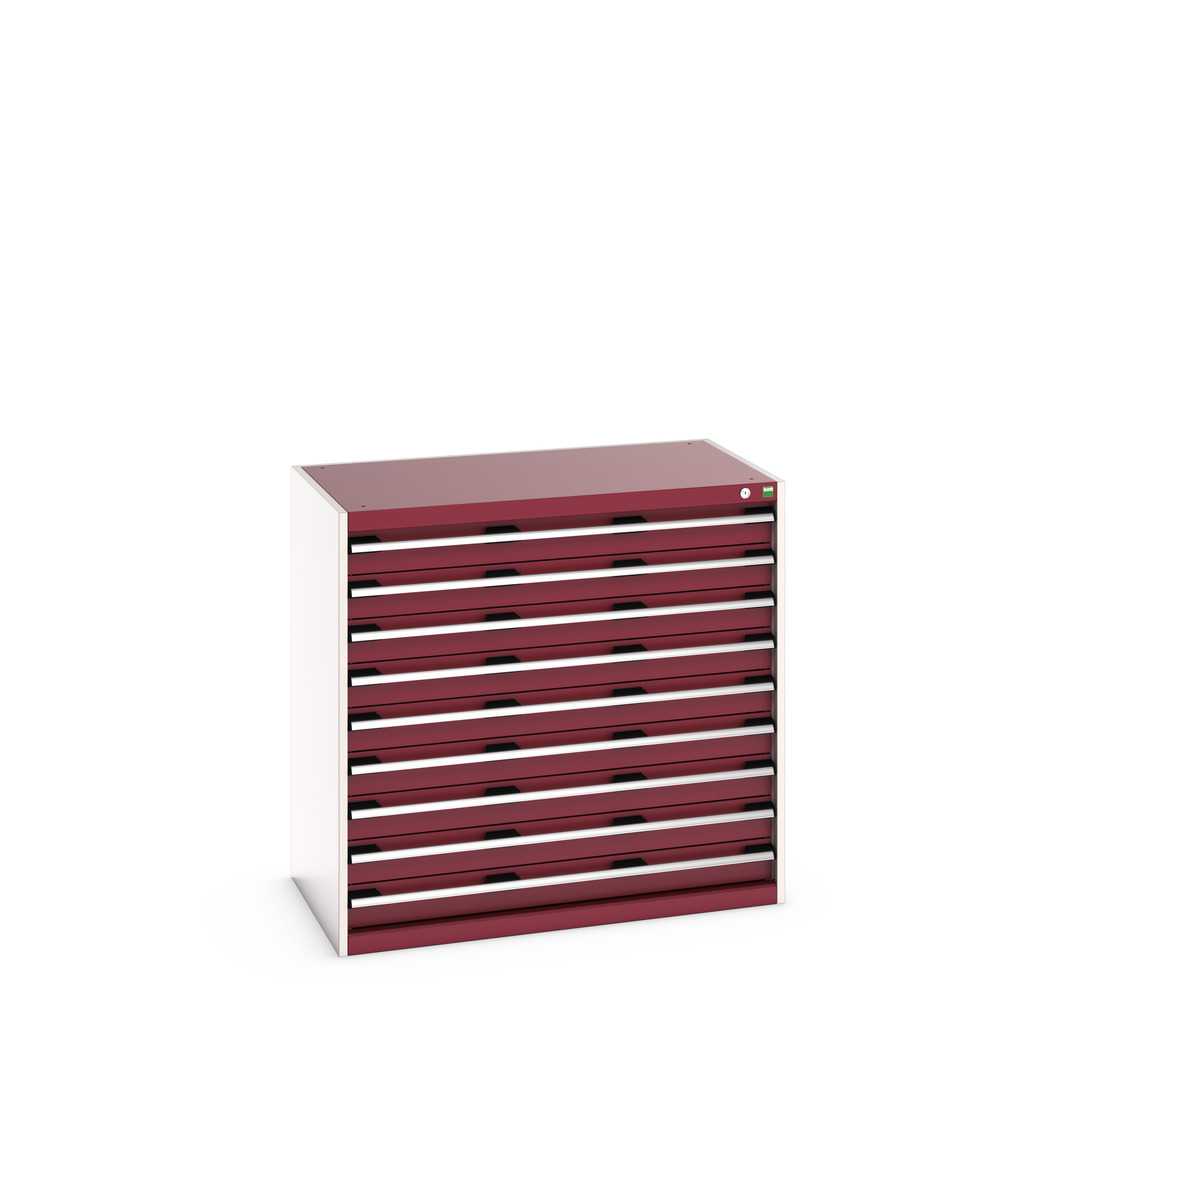 40021036.24V - cubio drawer cabinet